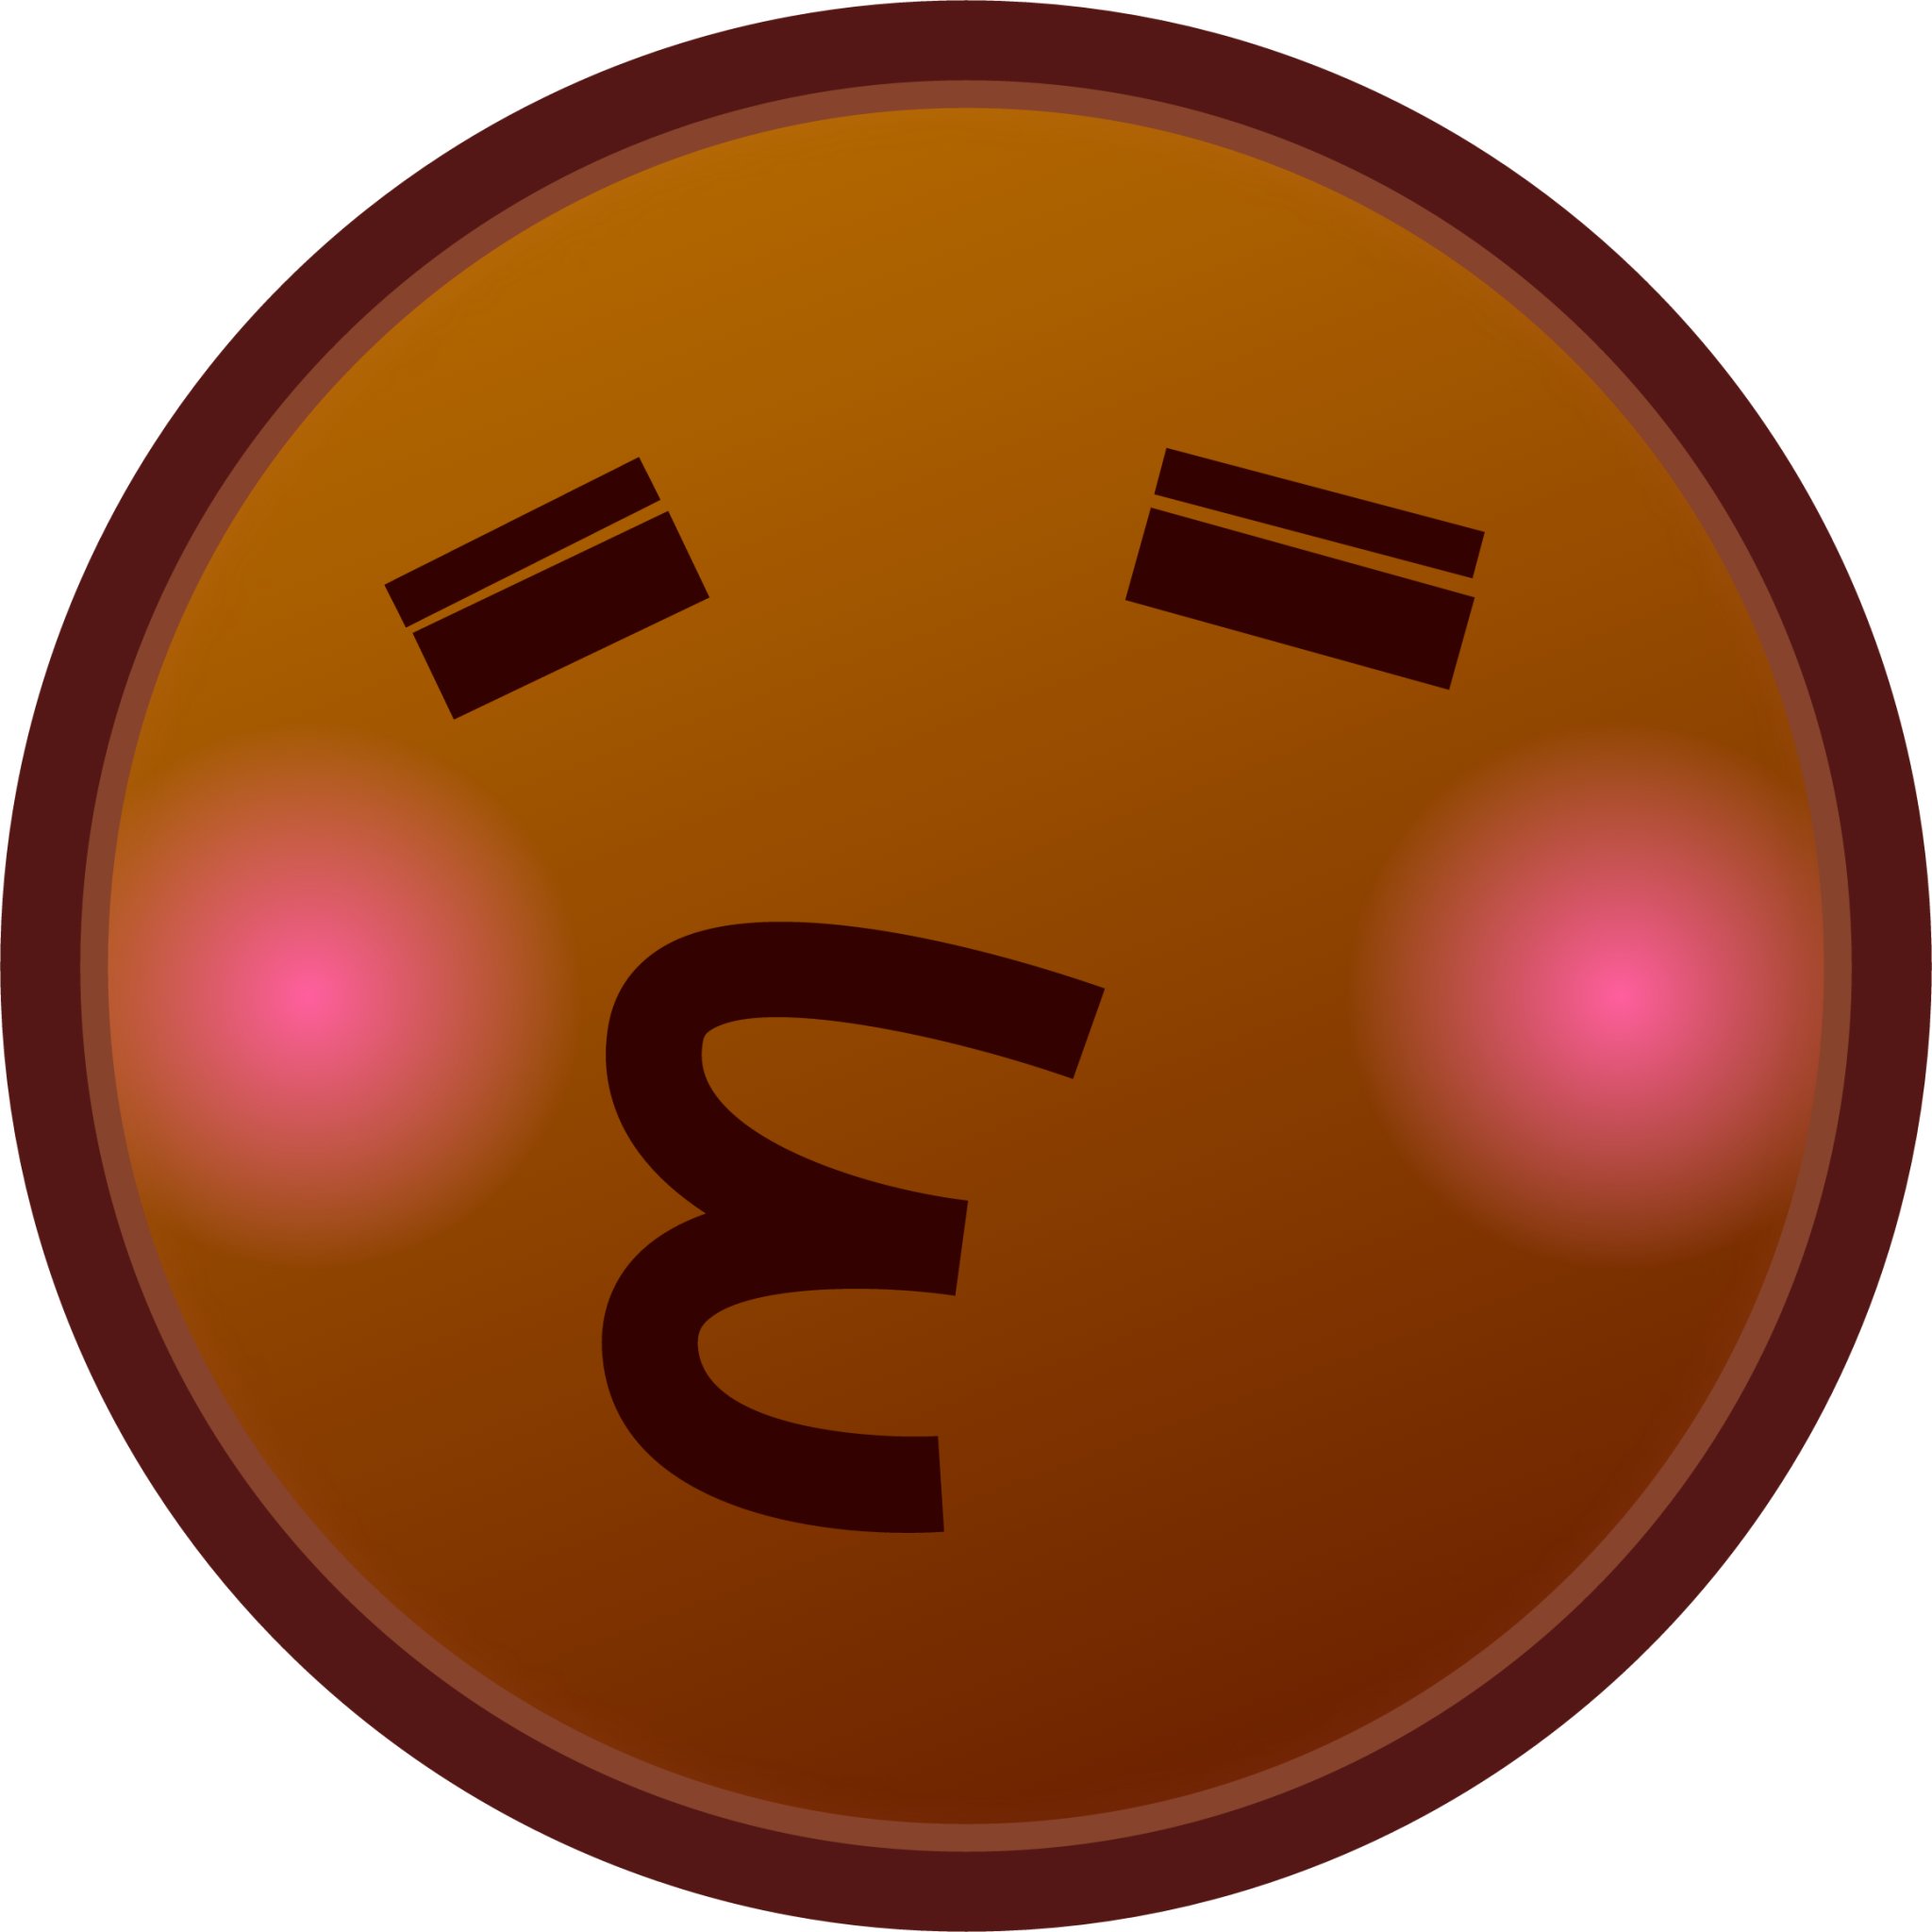 kissing closed eyes (brown) emoji